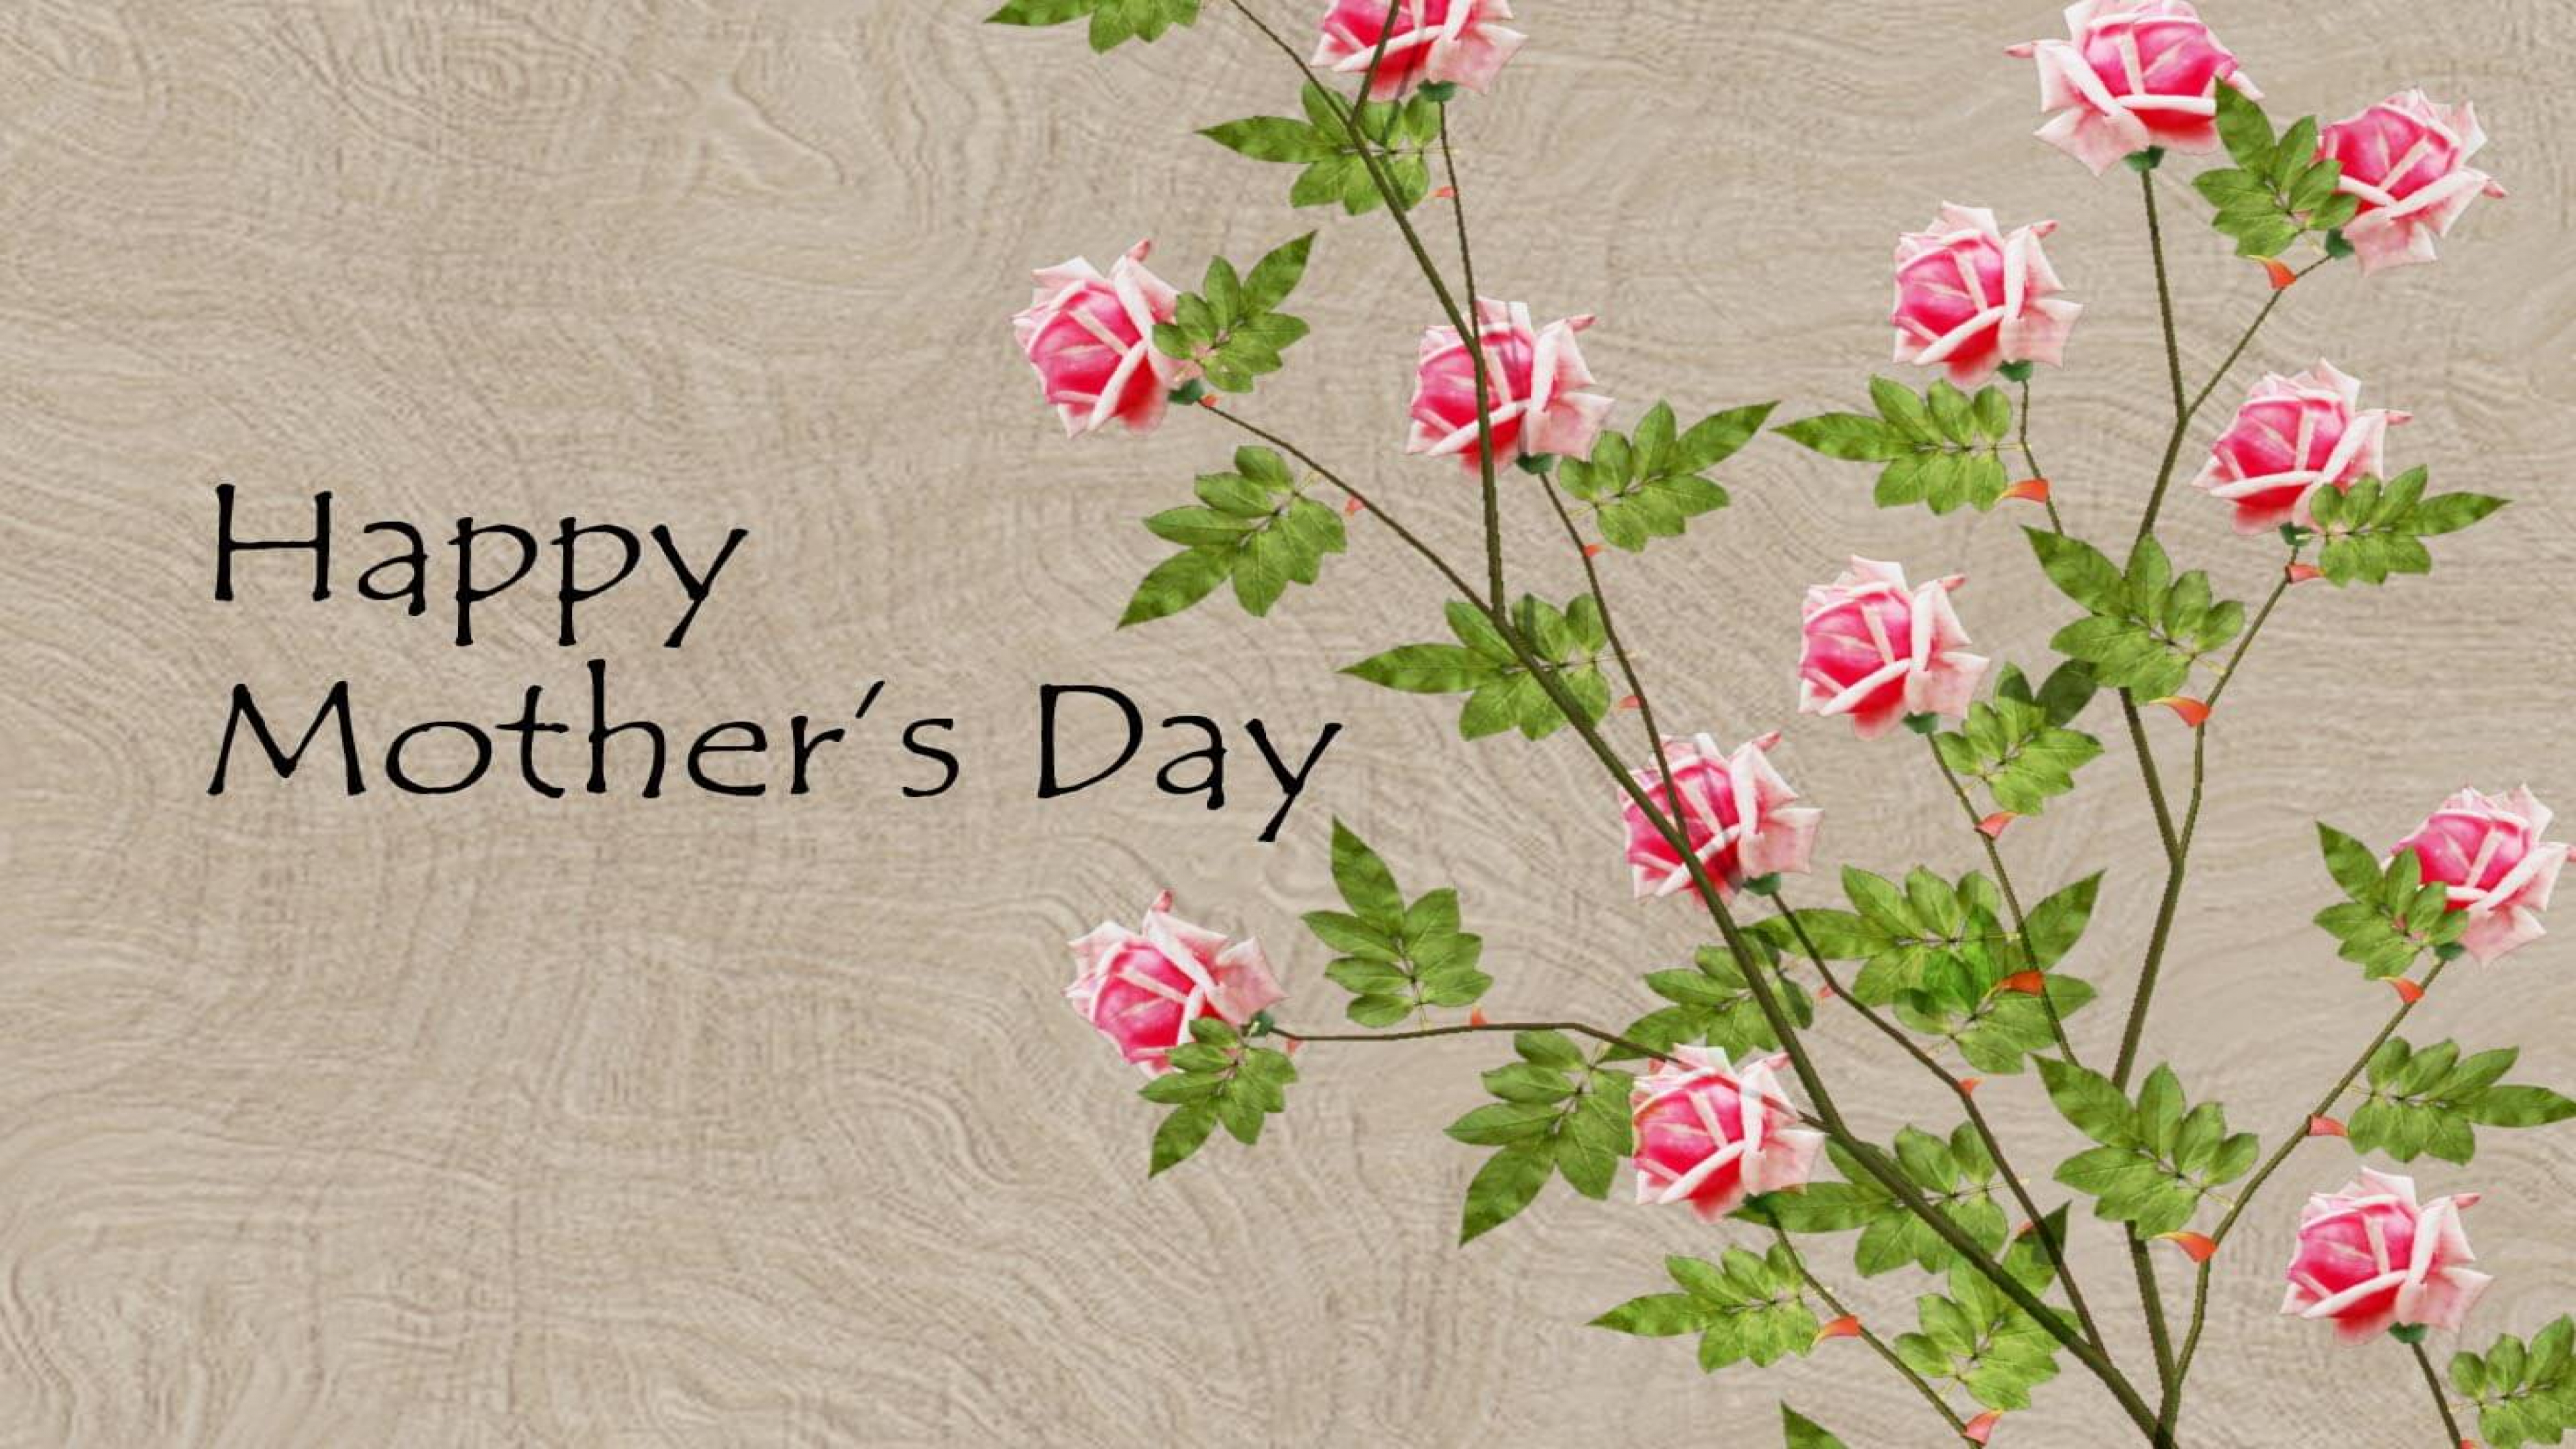 Матушка на английском. Happy mother s Day. Mother's Day открытка. Мазерс Дэй. Поздравление с днем матери на английском.